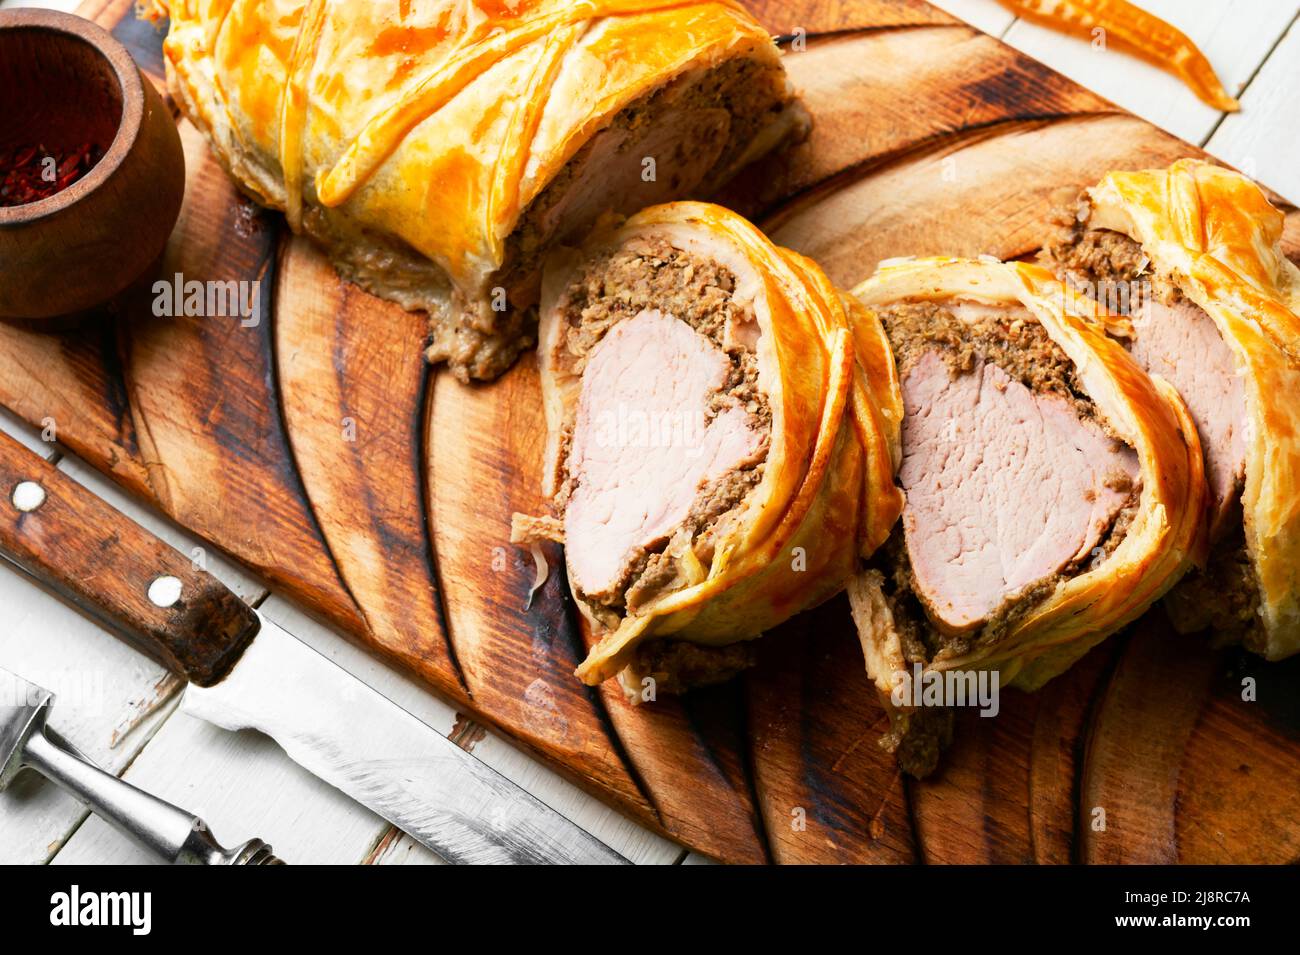 Saftiges Fleisch in einem Teig mit Gewürzen, Pilzen oder Gemüsepastete.  Wellington Meat Stockfotografie - Alamy